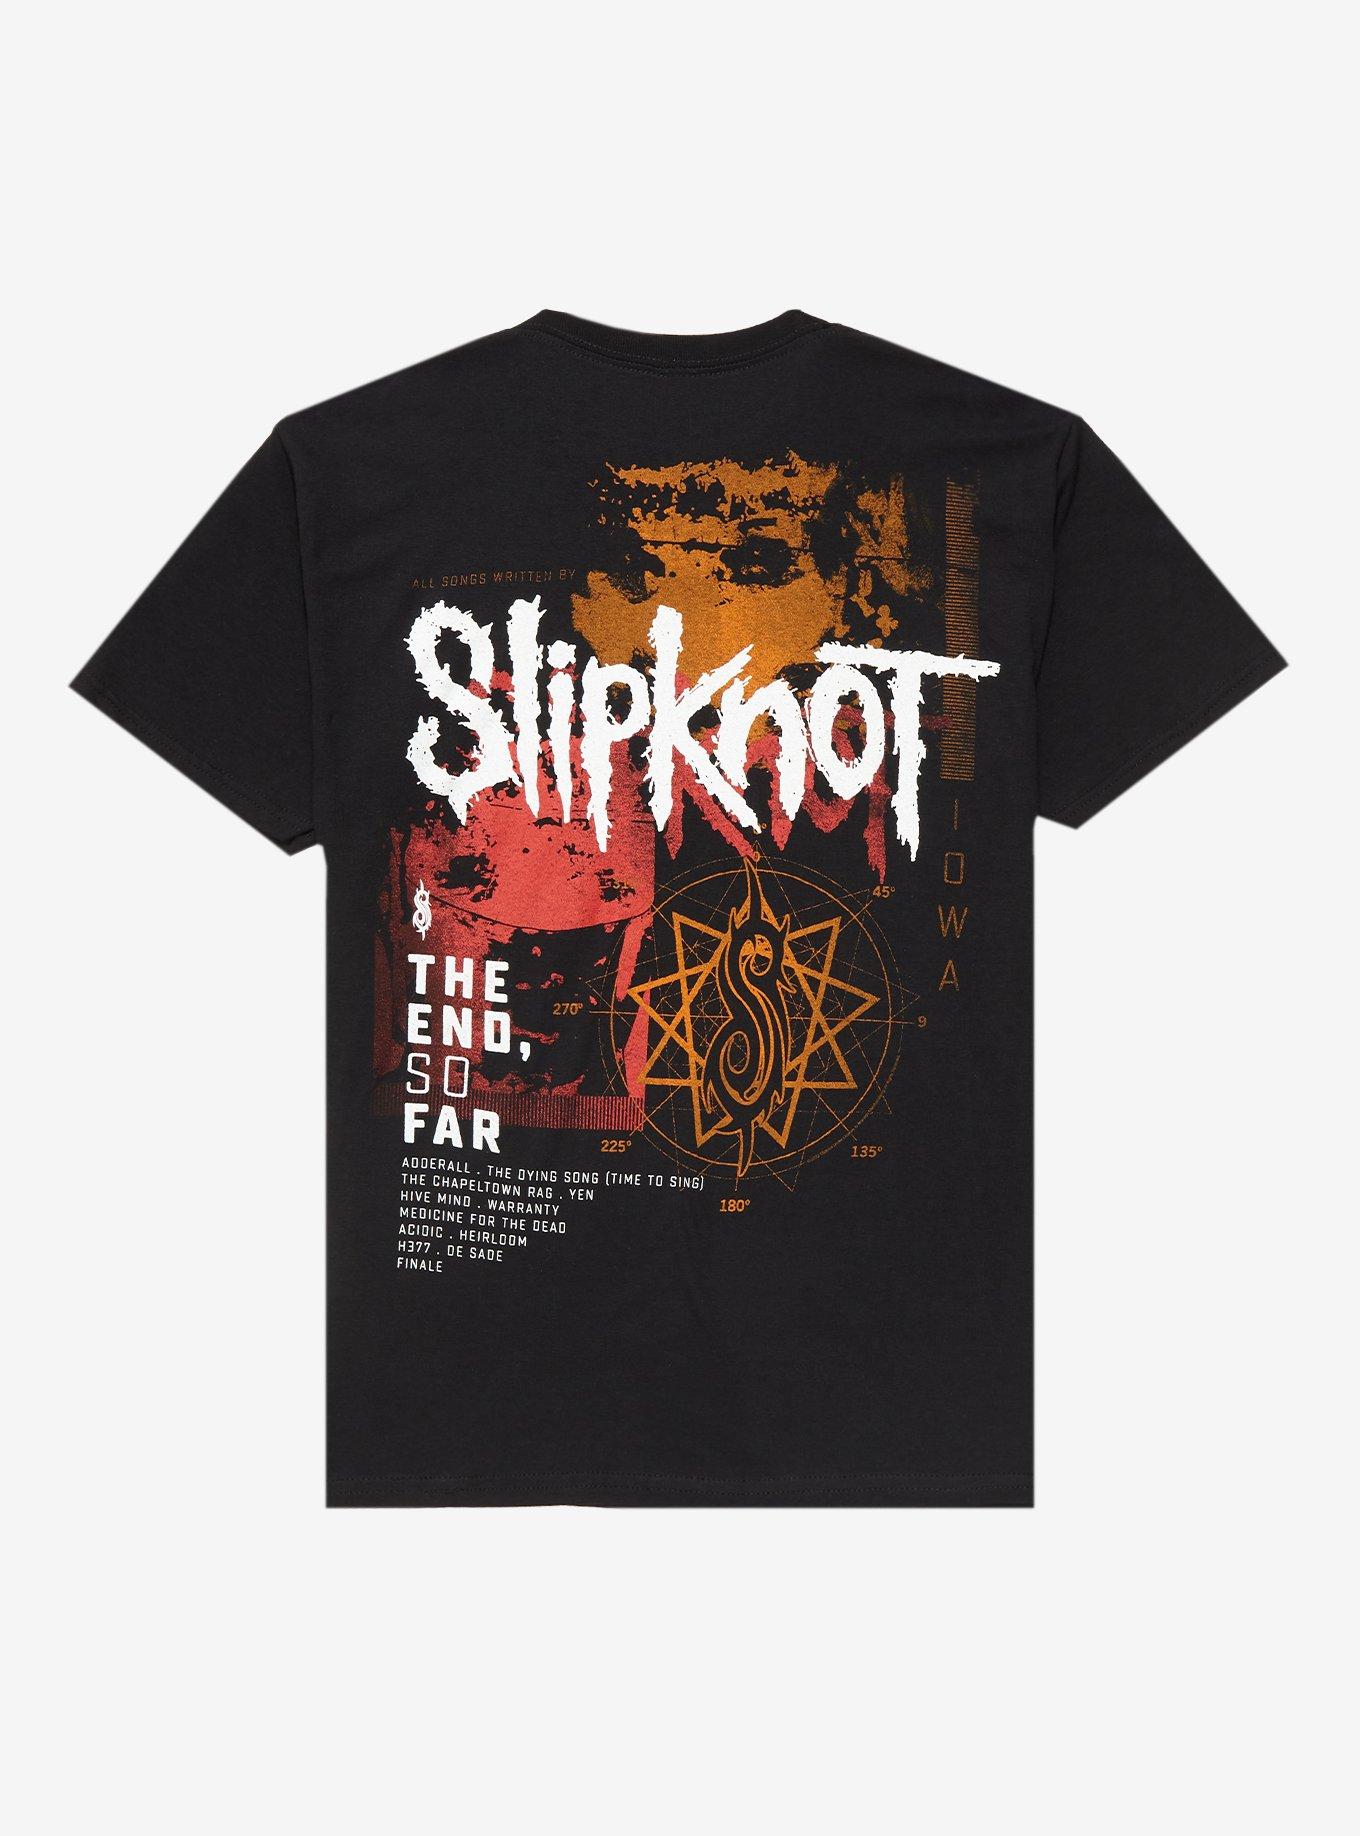 Slipknot The End, So Far Two-Sided Boyfriend Fit Girls T-Shirt, BLACK, alternate